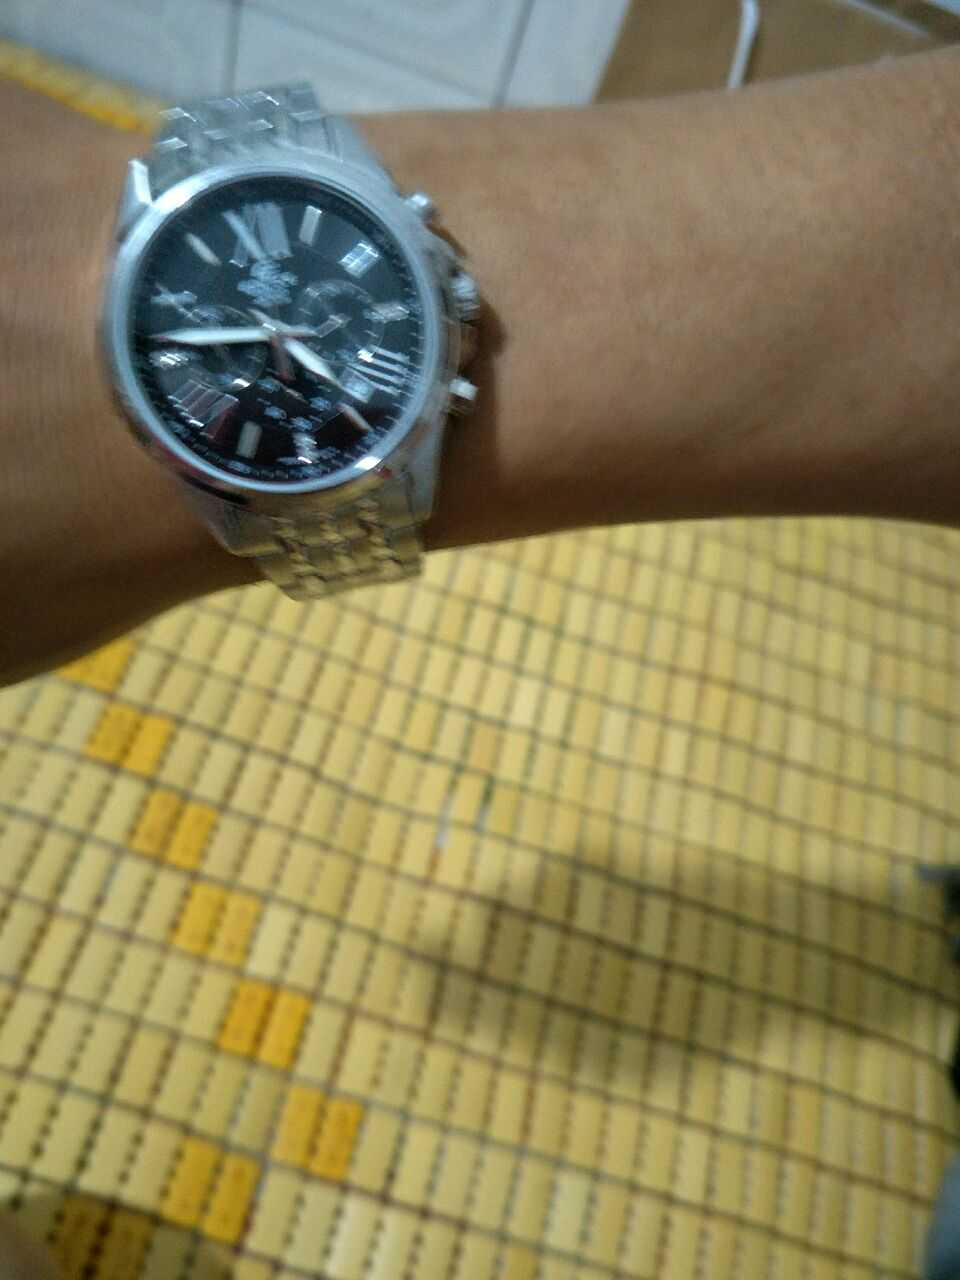 卡西欧EFR-548D-1AVUPR手表【表友晒单作业】跟老公买的...